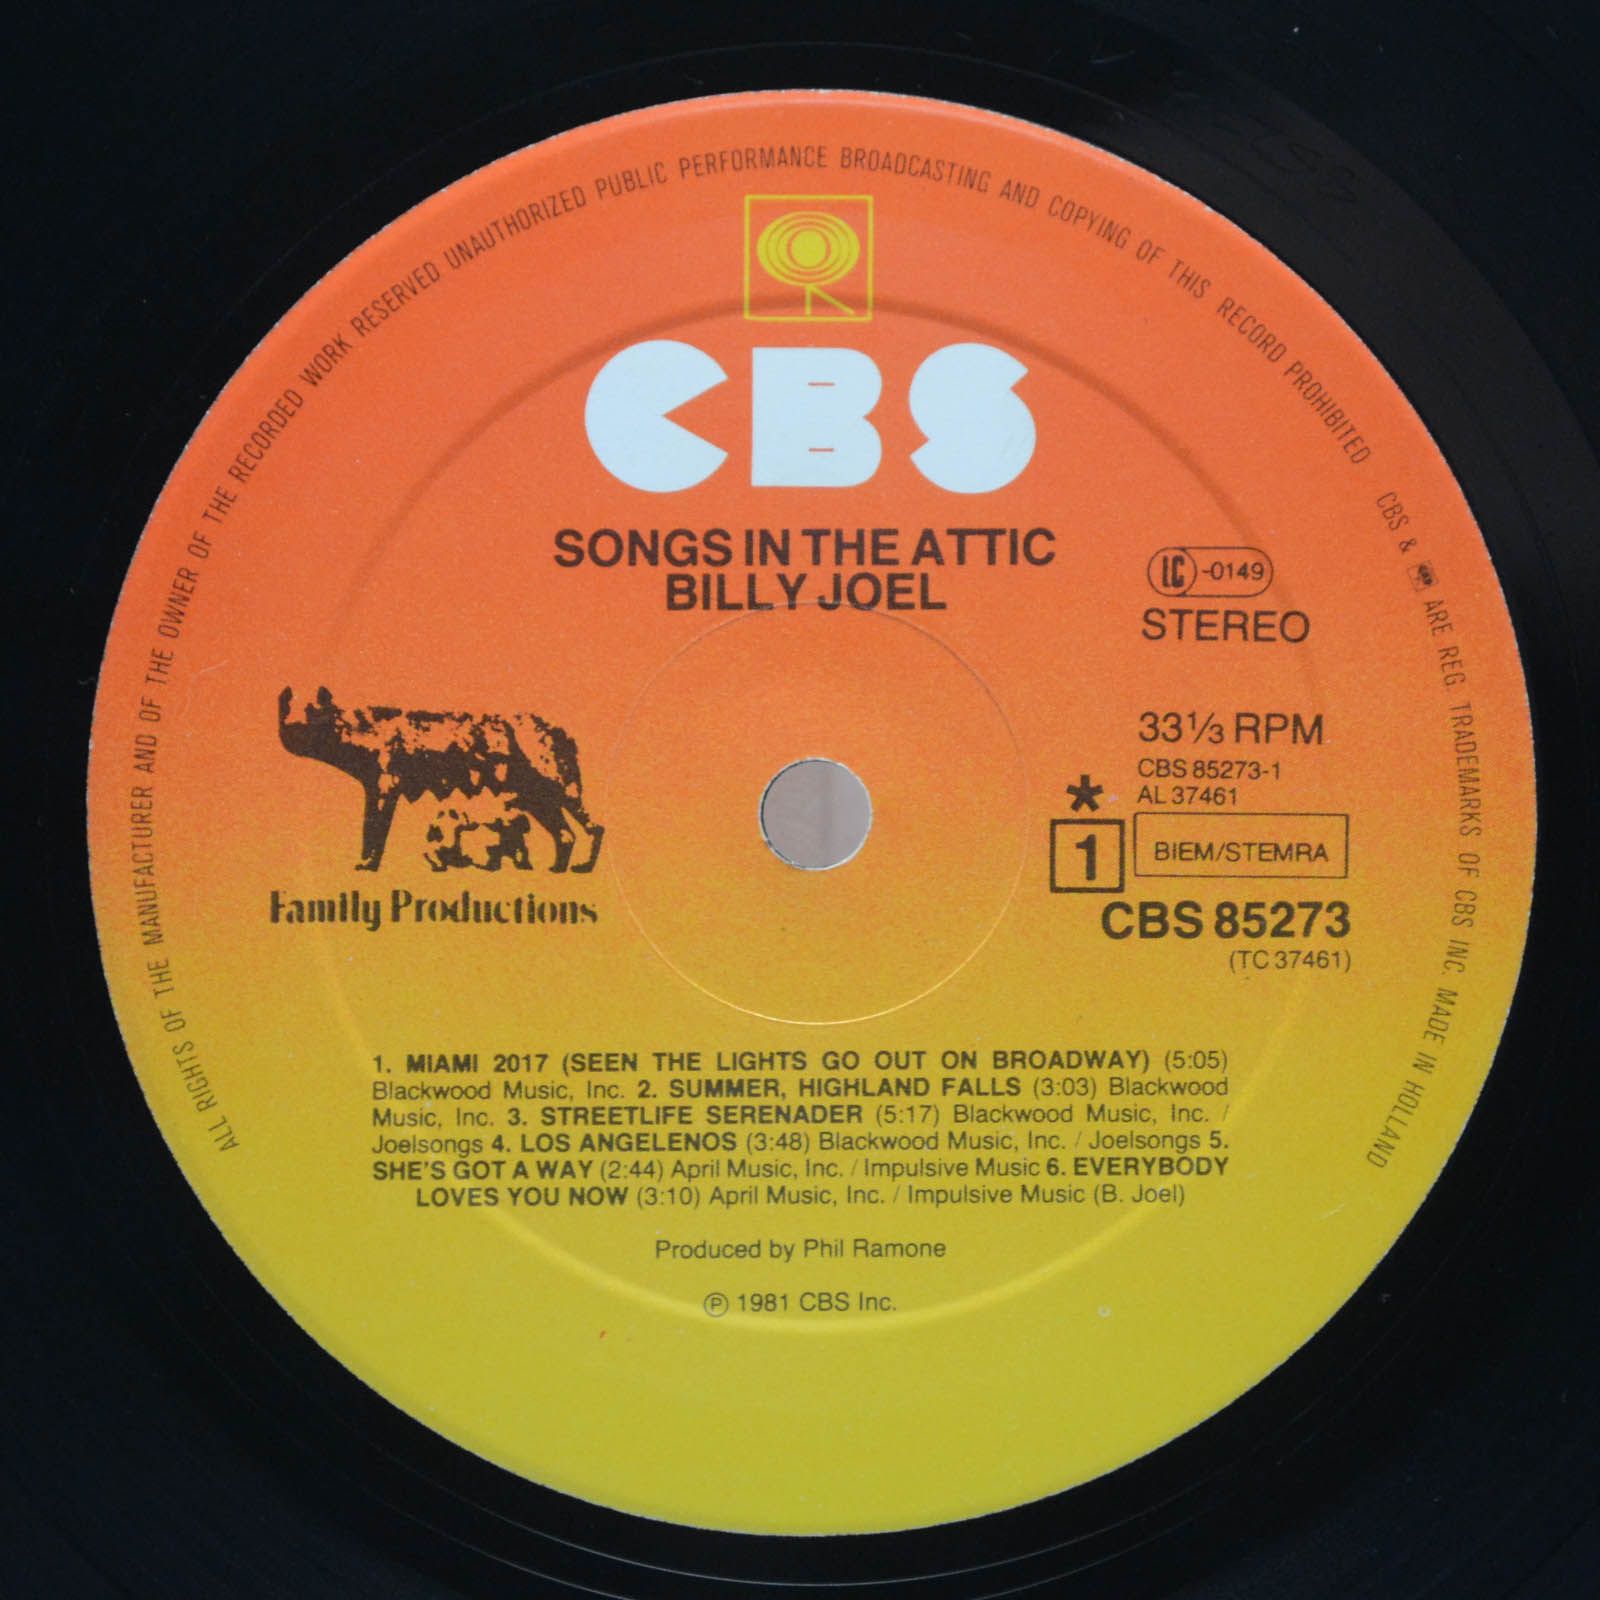 Billy Joel — Songs In The Attic, 1981